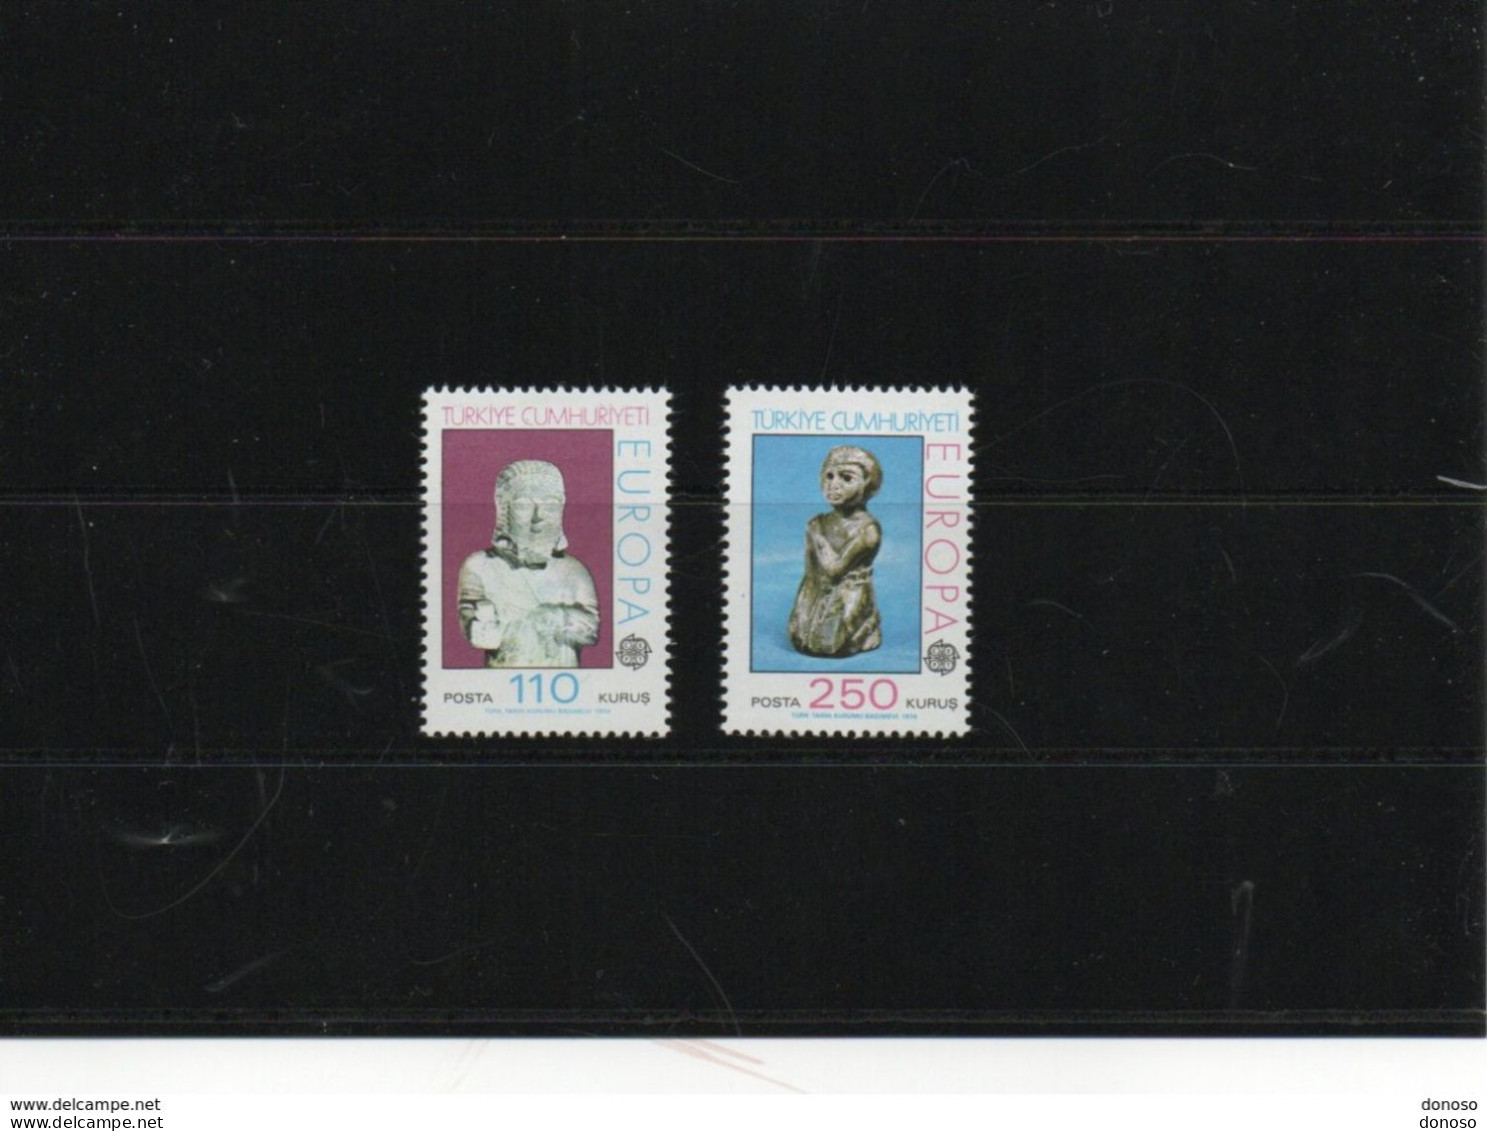 TURQUIE 1974 EUROPA , Statues Yvert 2089-2090, Michel 2320-2321  NEUF** MNH Cote : 7,50 Euros - Ongebruikt